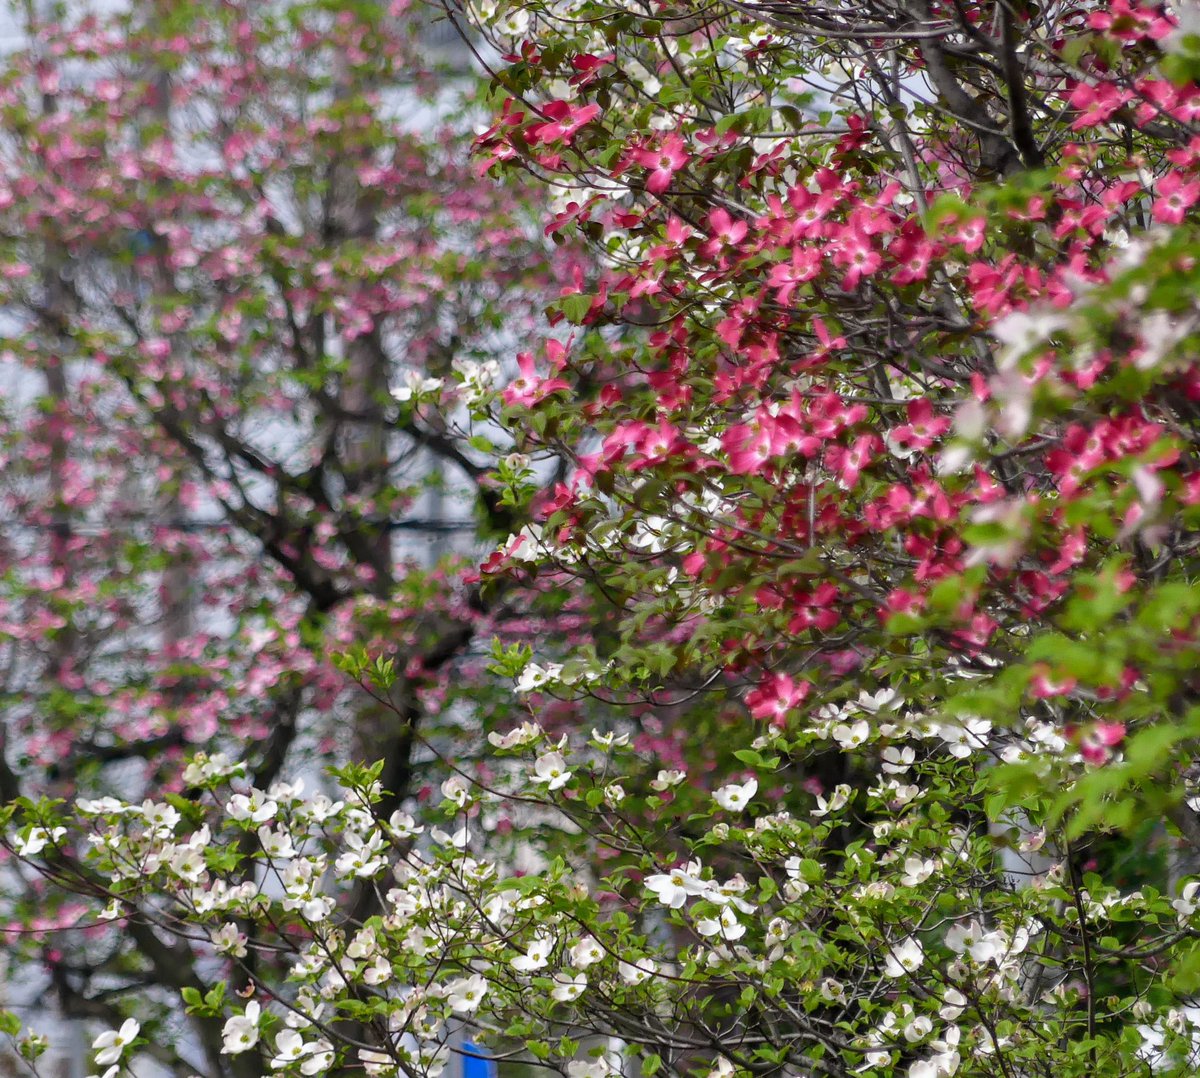 茨木市の
保健所沿いの
ハナミヅキが満開です

今を盛りにと咲いています

紅色　もも色
そして白色と咲きほこっていますよ

#ハナミズキ